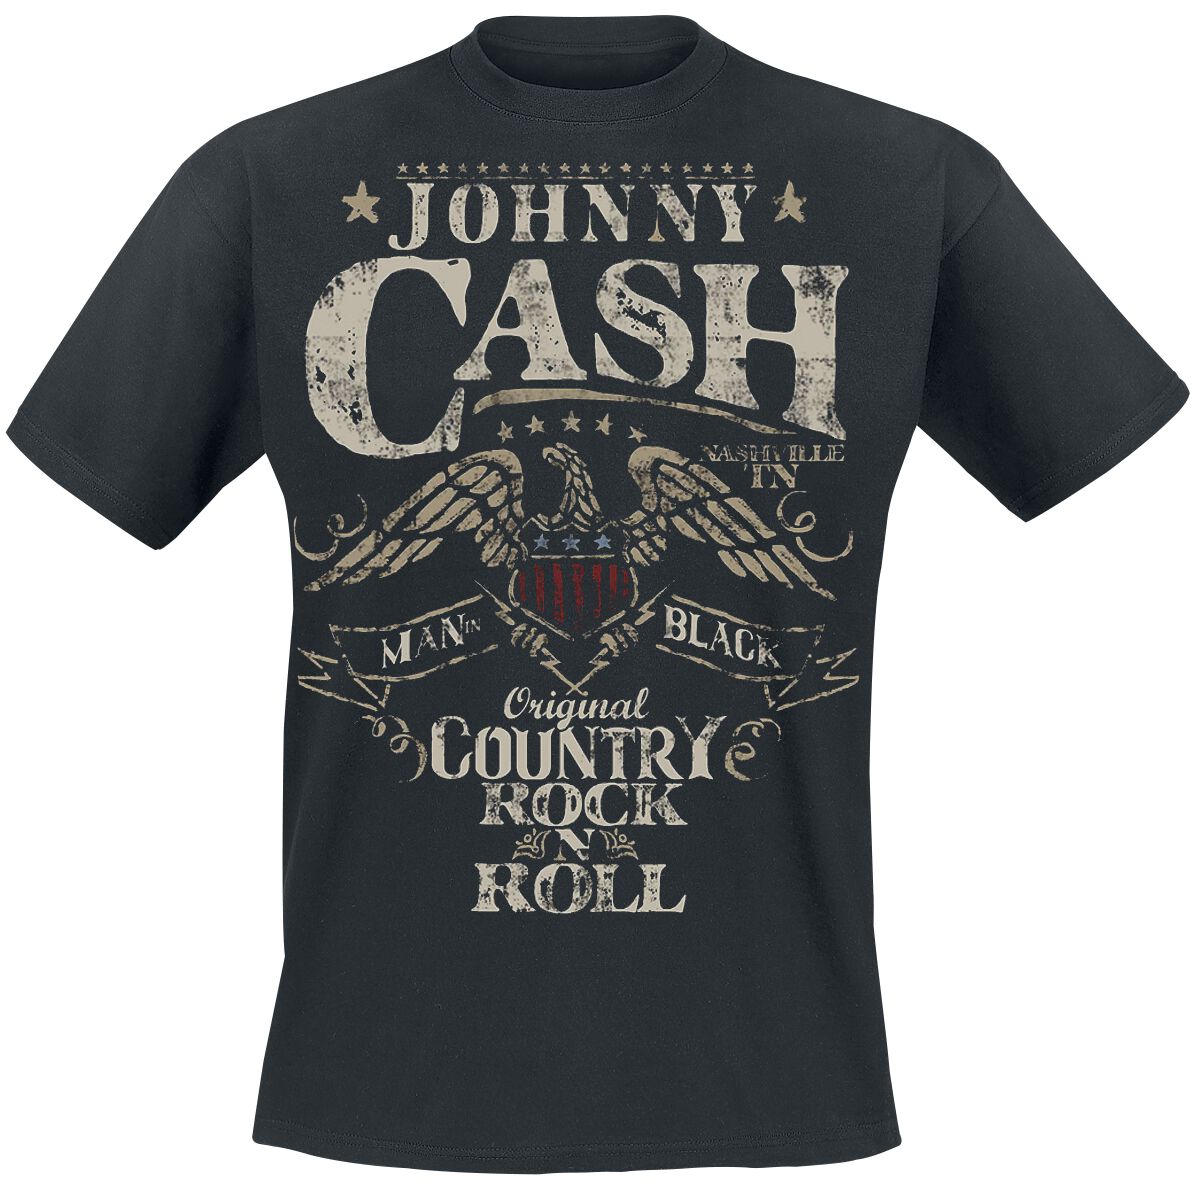 Johnny Cash T-Shirt - Original Country Rock n Roll - S bis 3XL - für Männer - Größe XXL - schwarz  - Lizenziertes Merchandise!